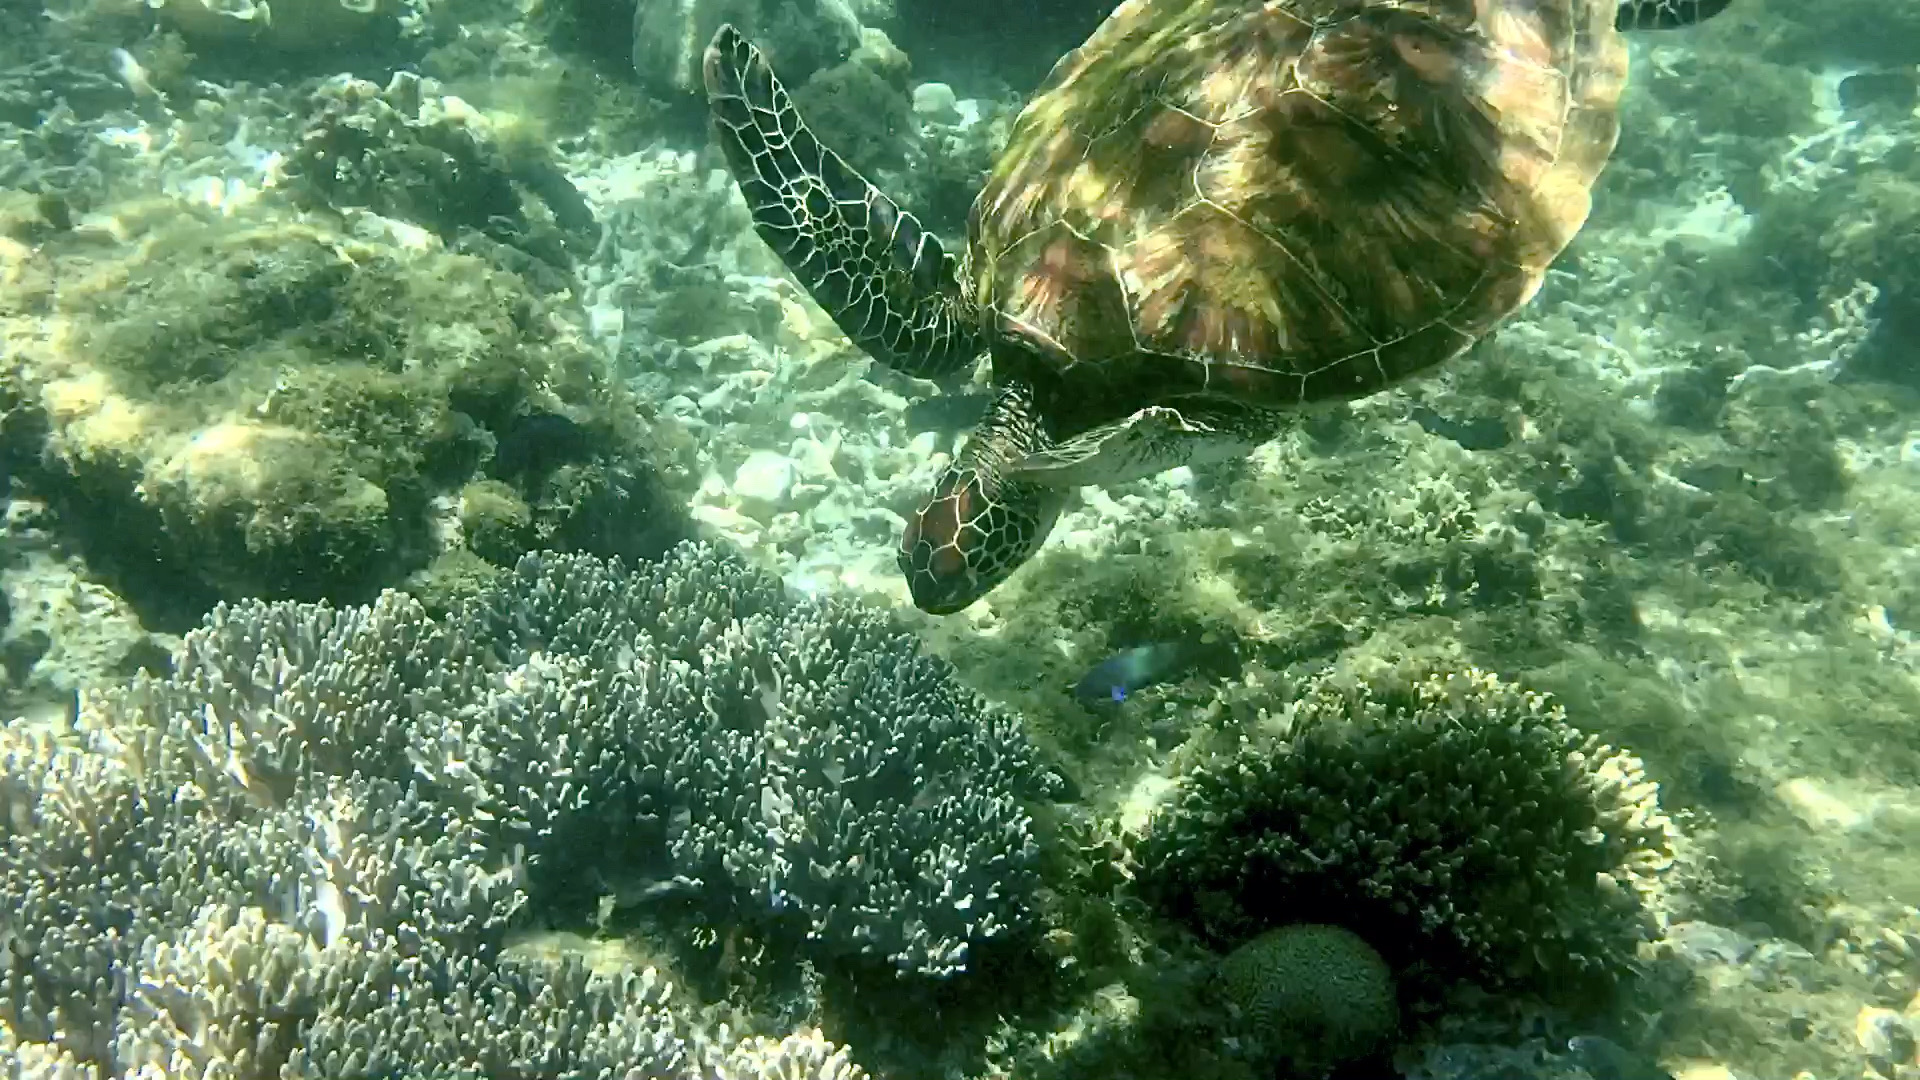 📍详细地址： 阿波岛  杜马盖地南侧出海30min，隔海可相望  👍特色推荐： 海龟保护区，实实在在